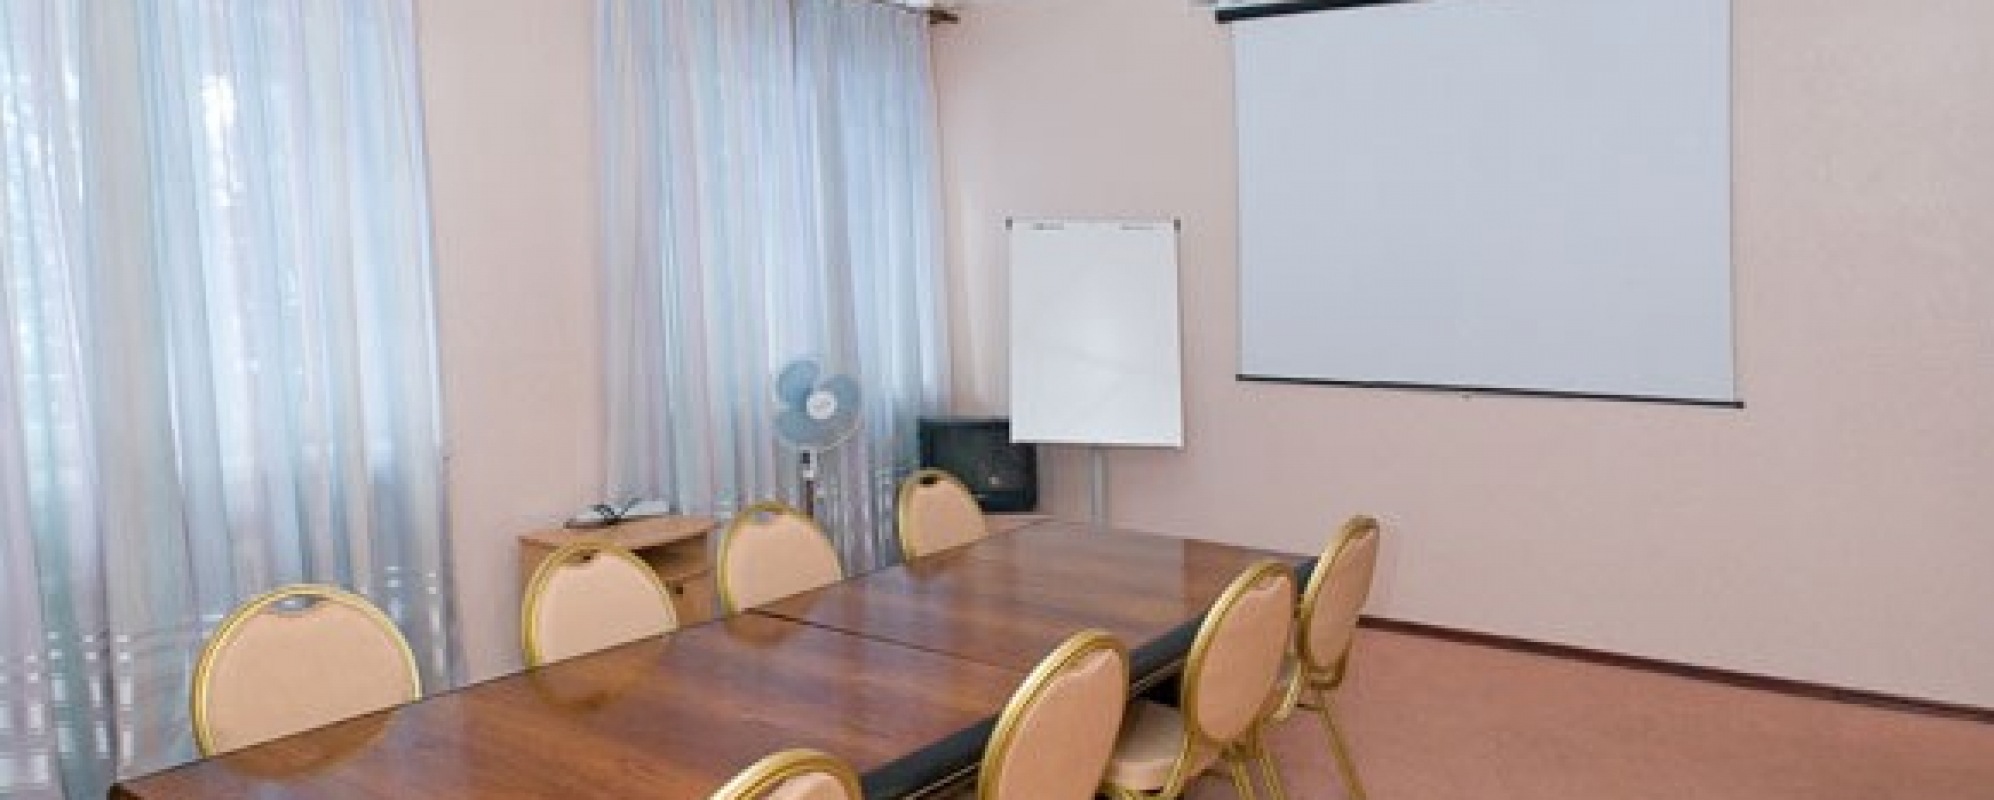 Фотографии комнаты для переговоров Бирюзовый